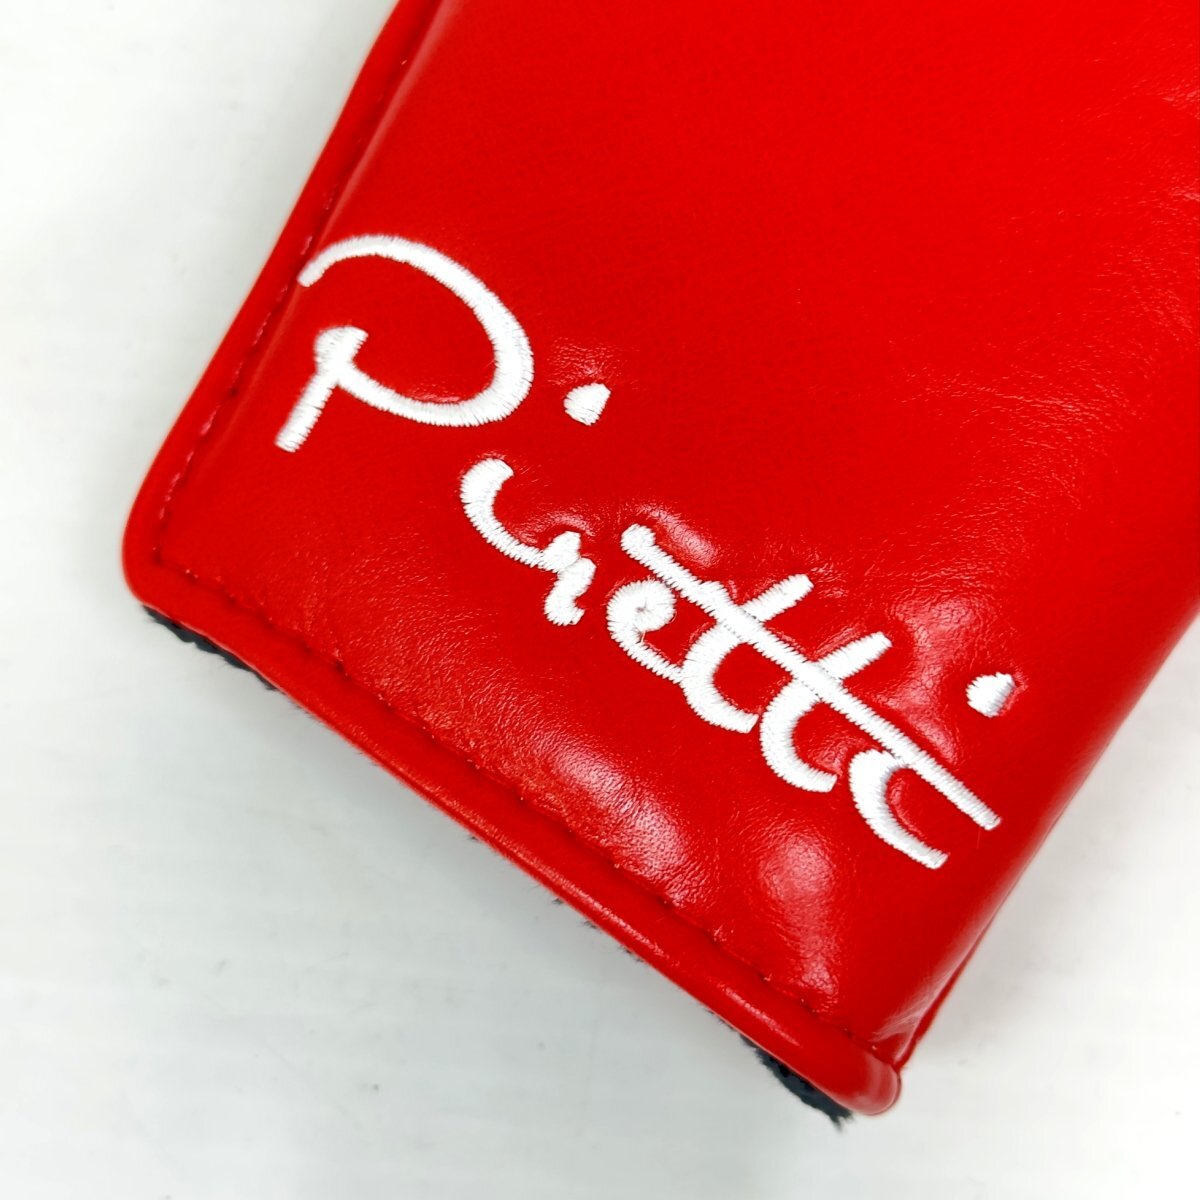 1 иен *PirettipiretiPR-PC0007 короткая клюшка покрытие ( красный ) Япония стандартный товар / магнит открытие и закрытие * бесплатная доставка *